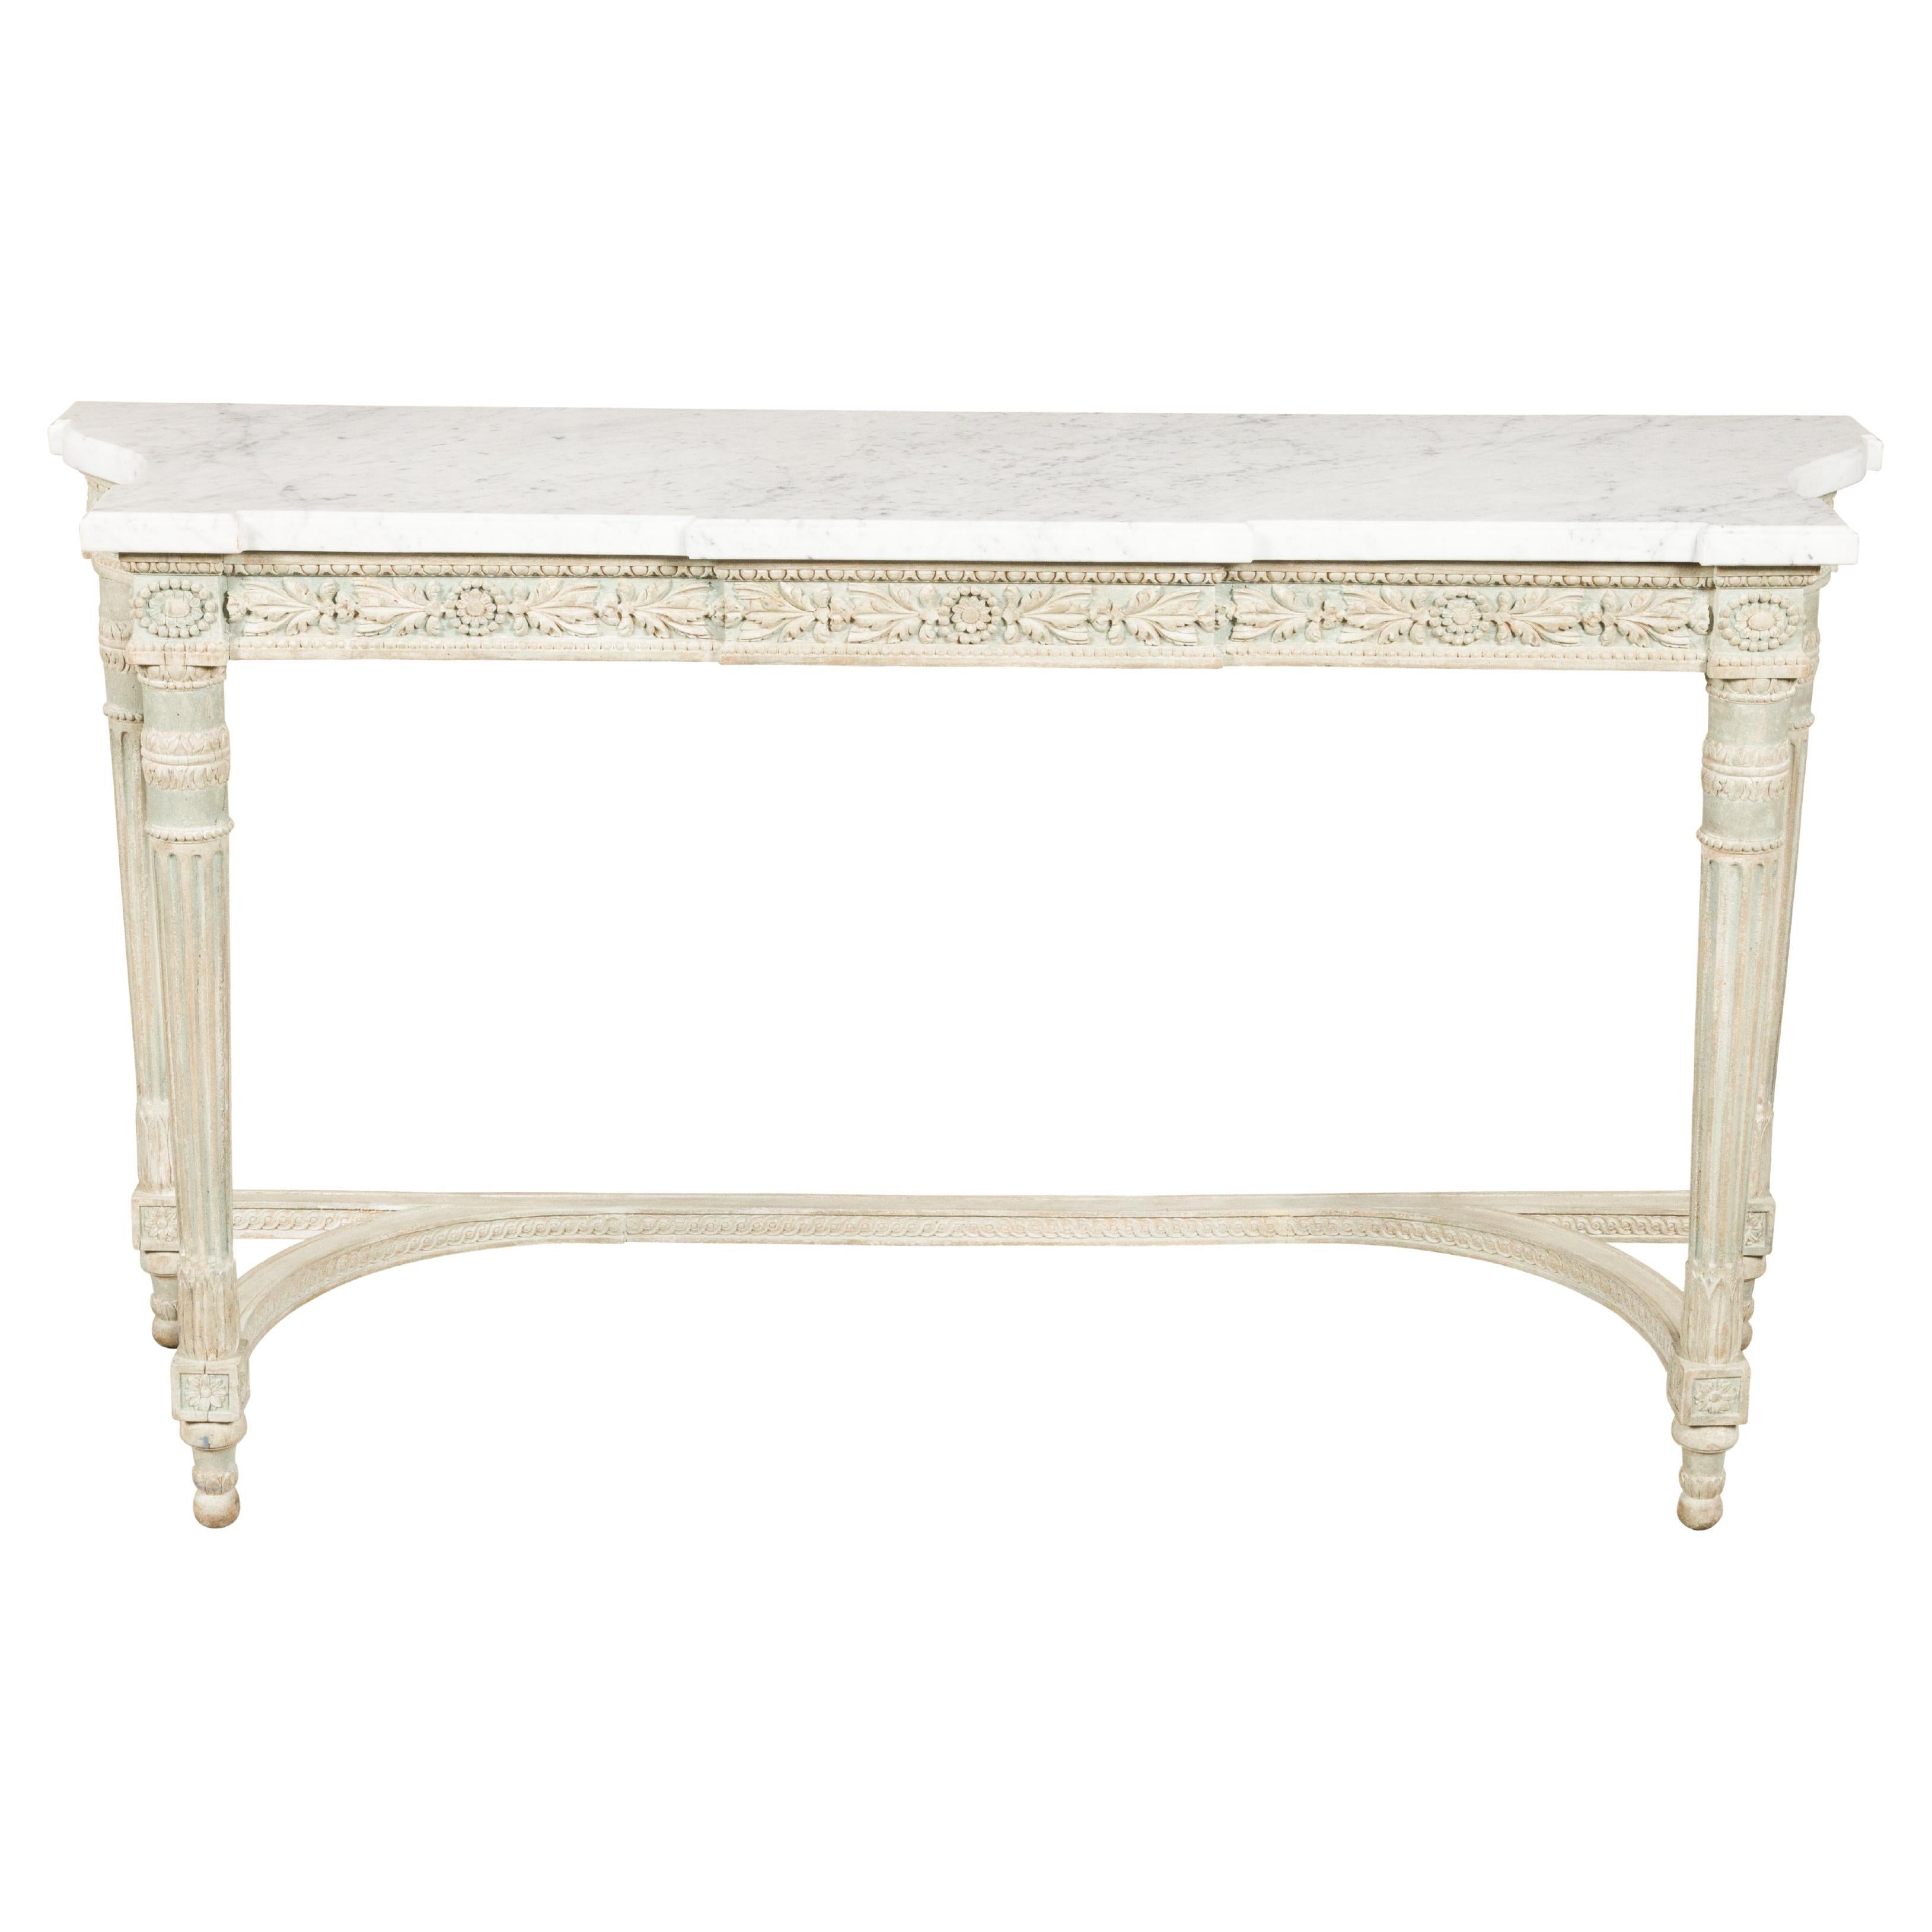 Table console française du 19ème siècle avec tablier sculpté et plateau en marbre blanc